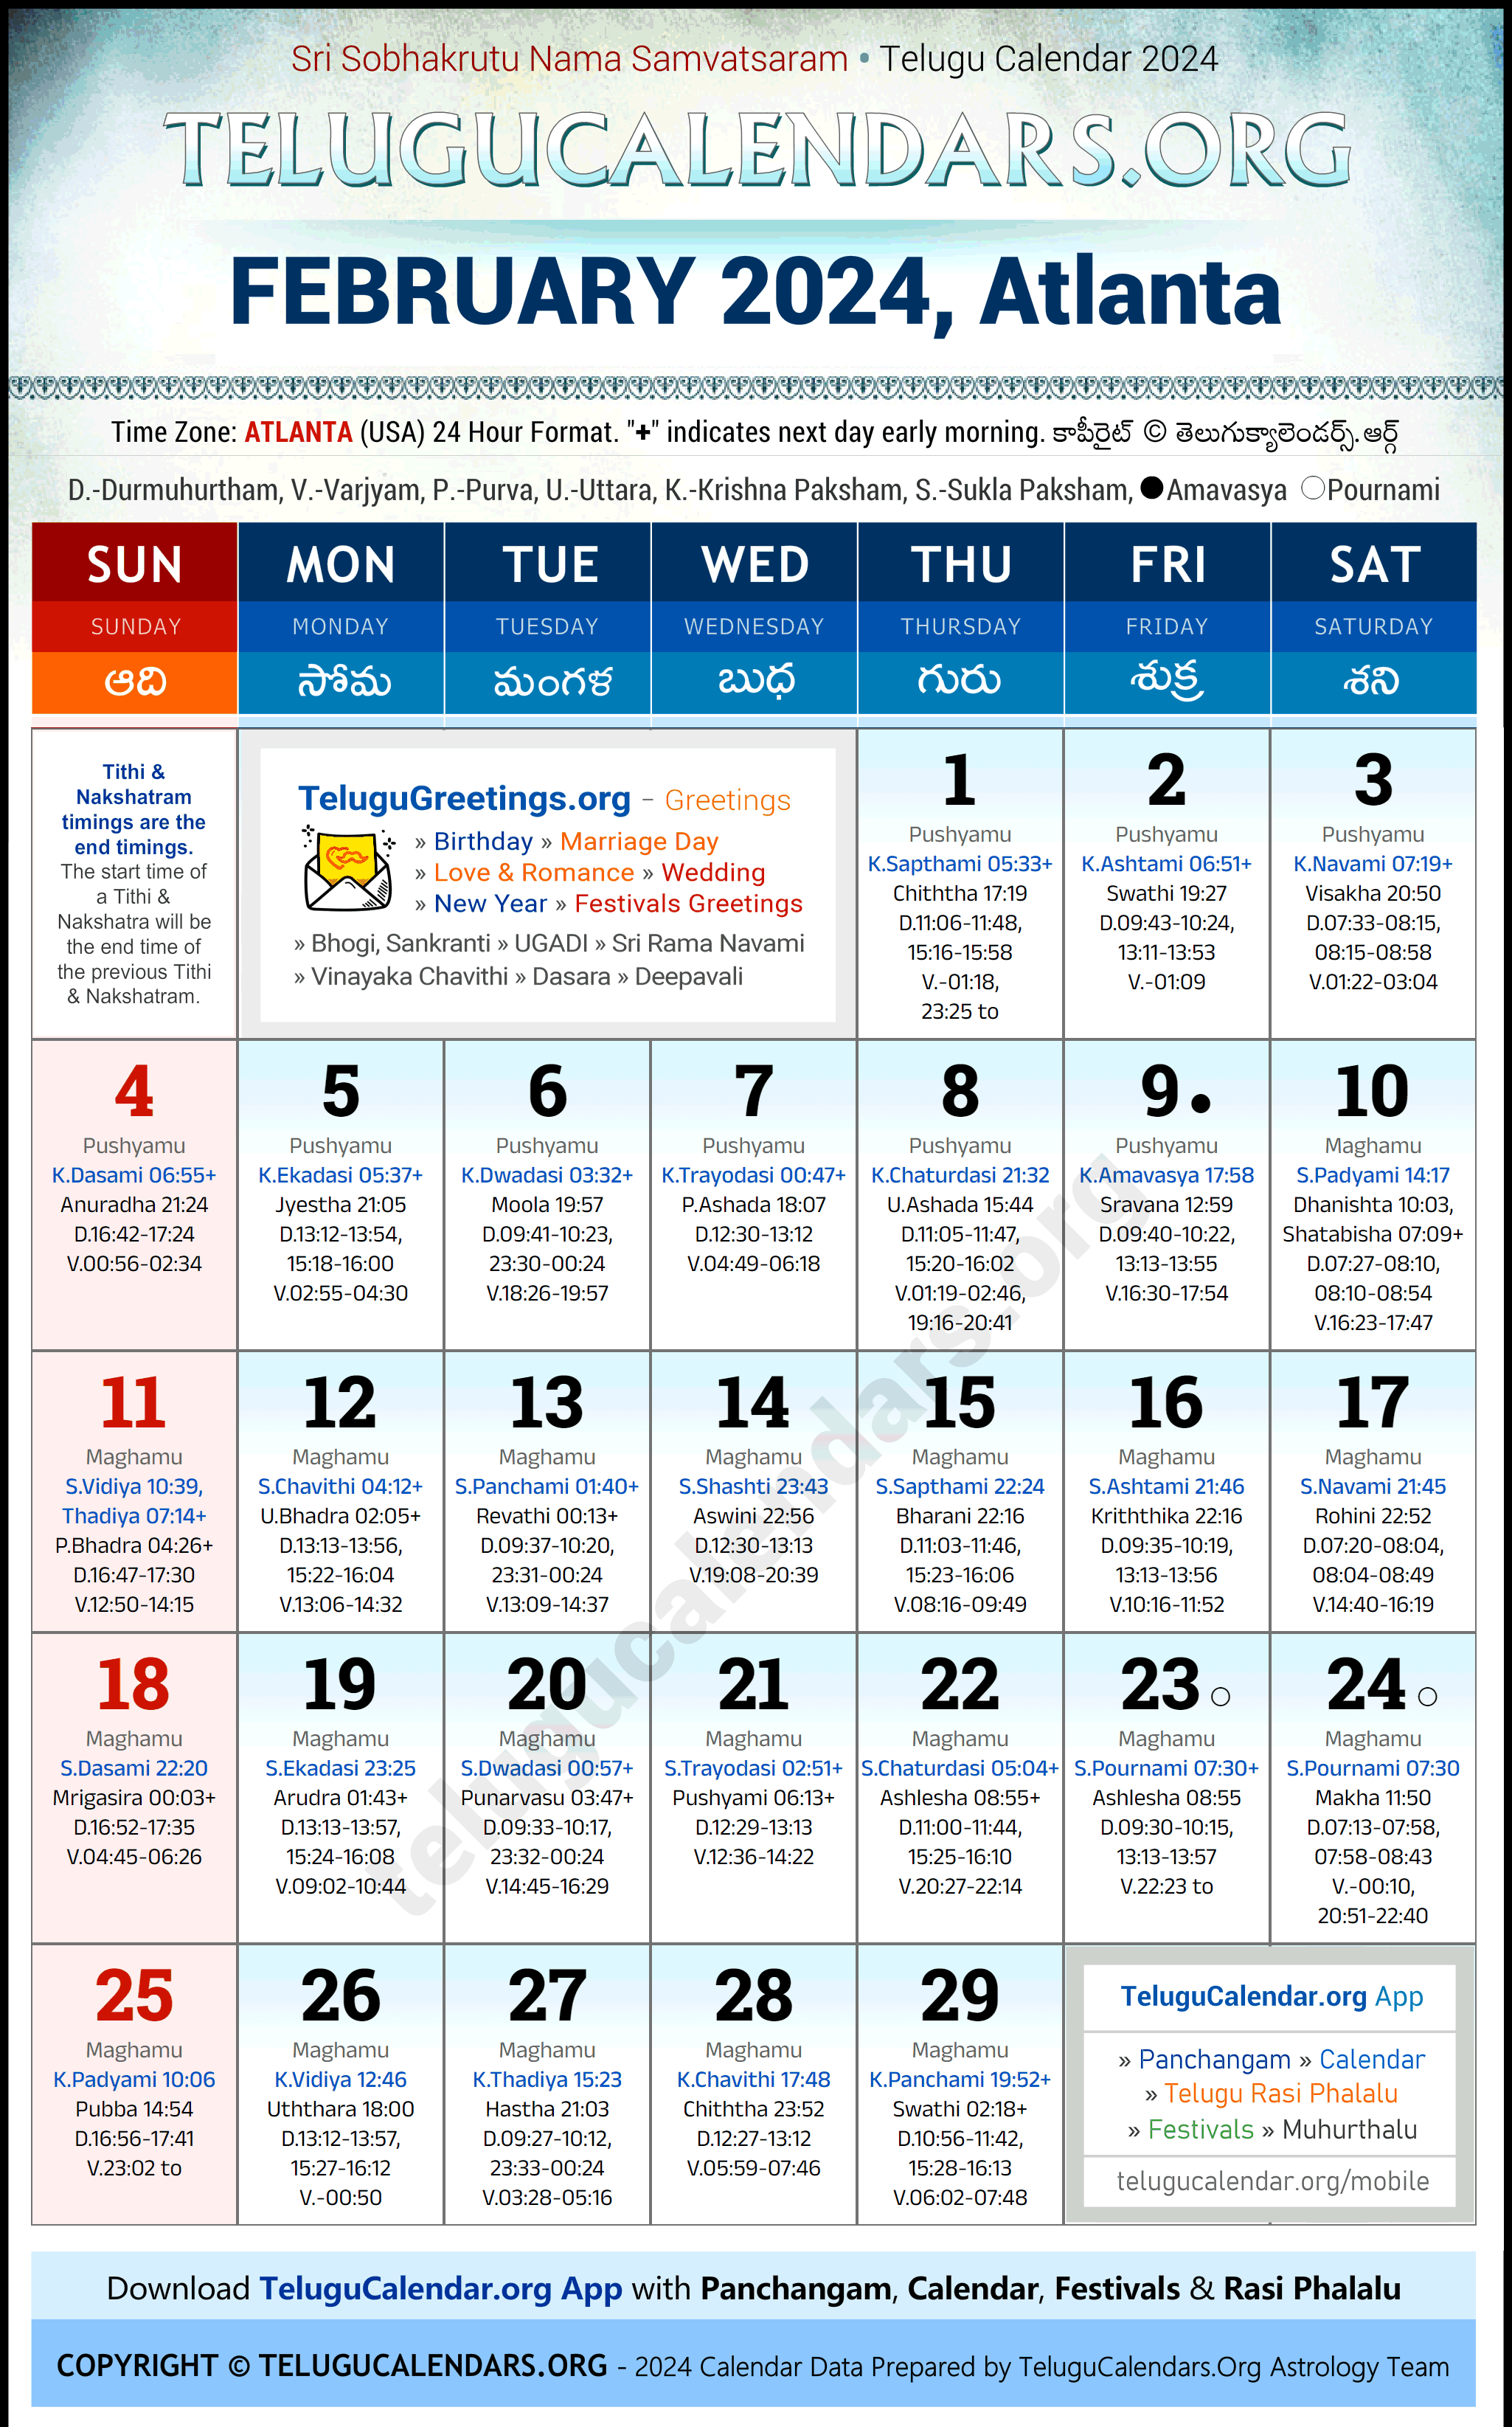 Telugu Calendar 2024 February Festivals for Atlanta